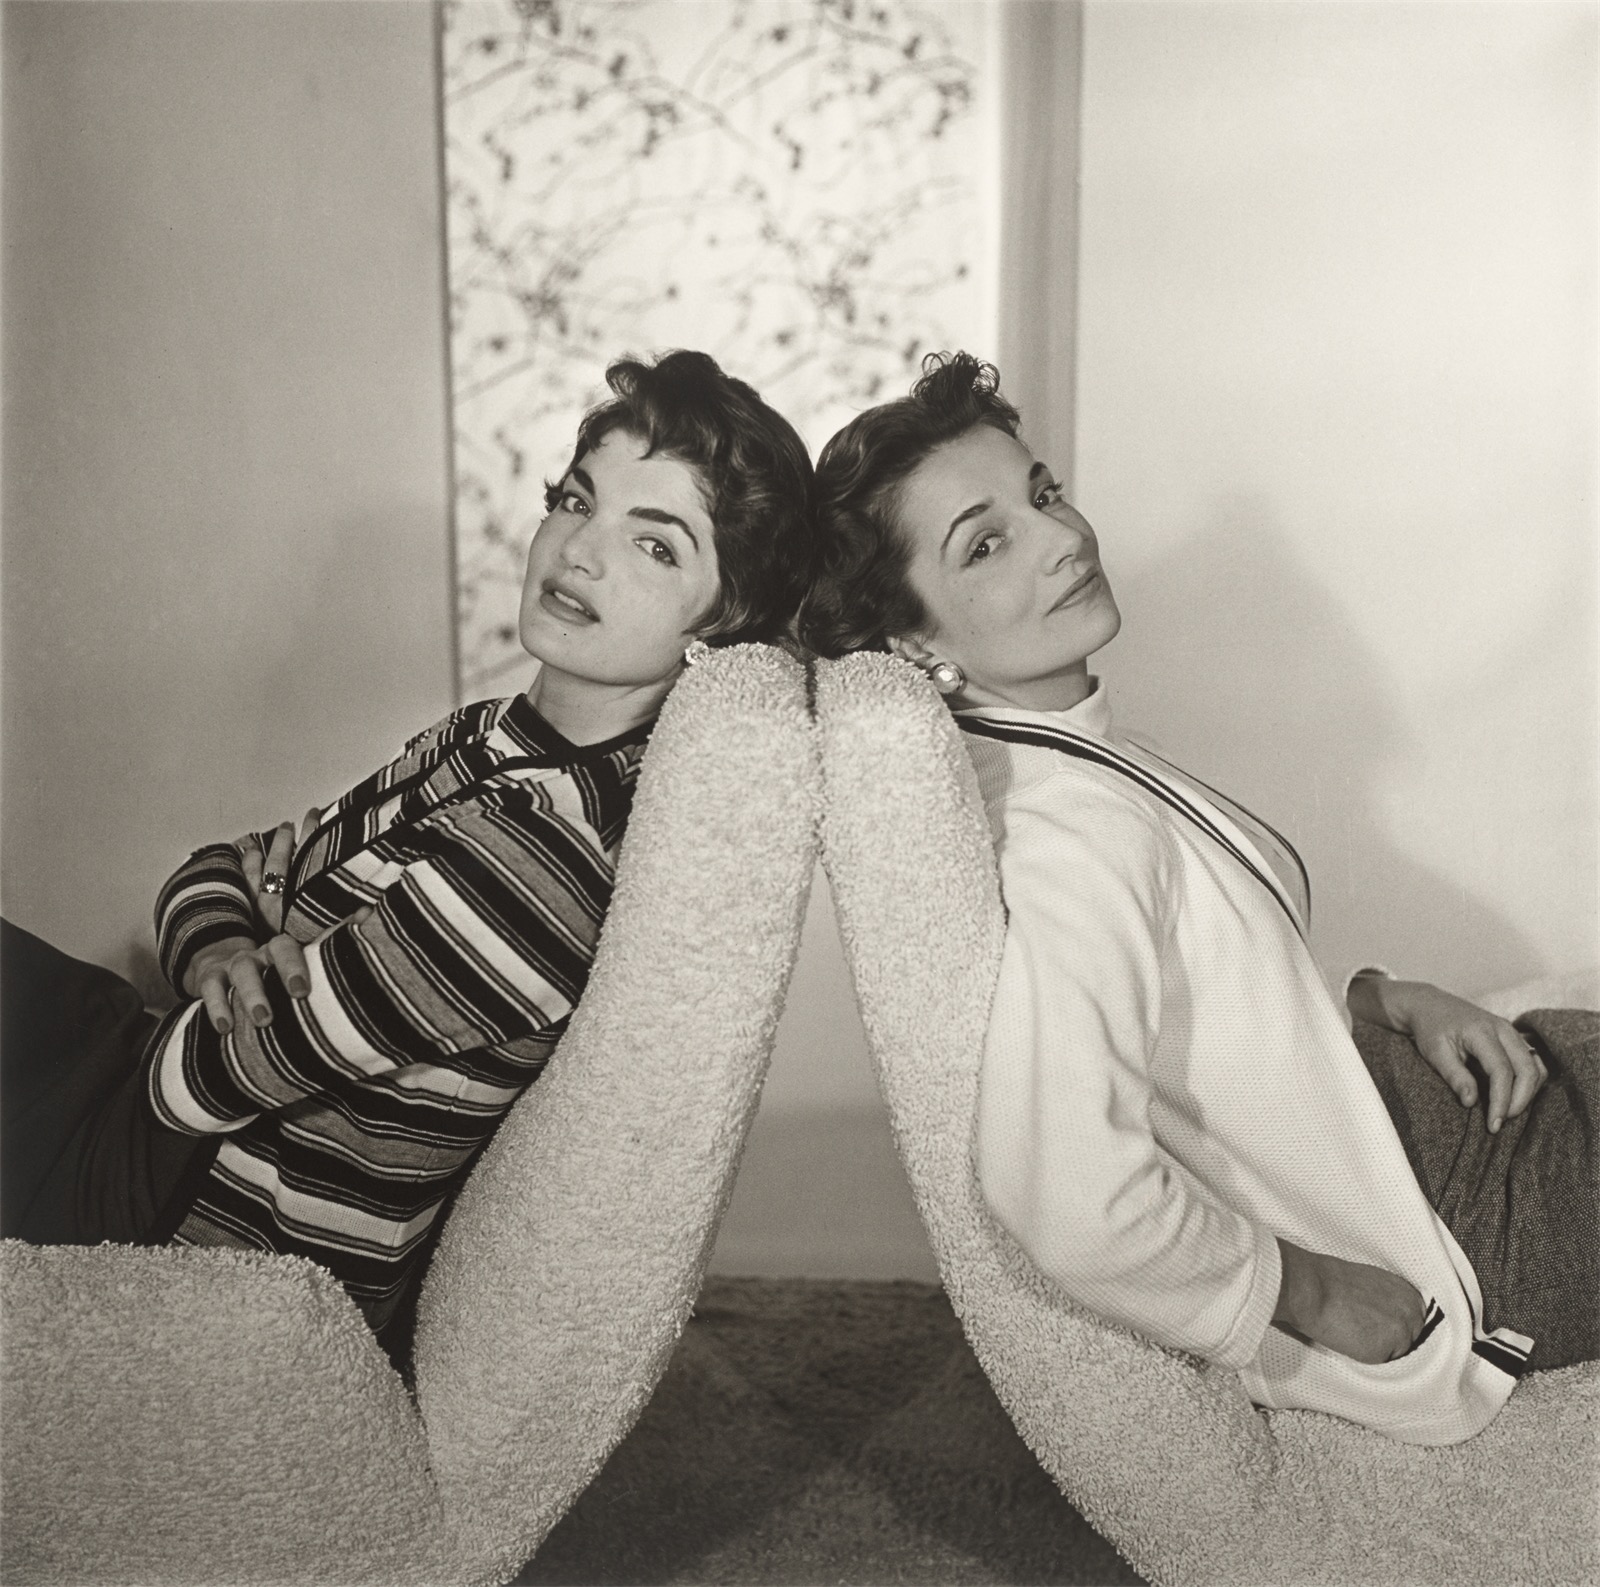 Horst P. Horst (i.e. Horst Paul Albert Bohrmann). Bouvier Sisters, Jackie & Lee, New York. 1955